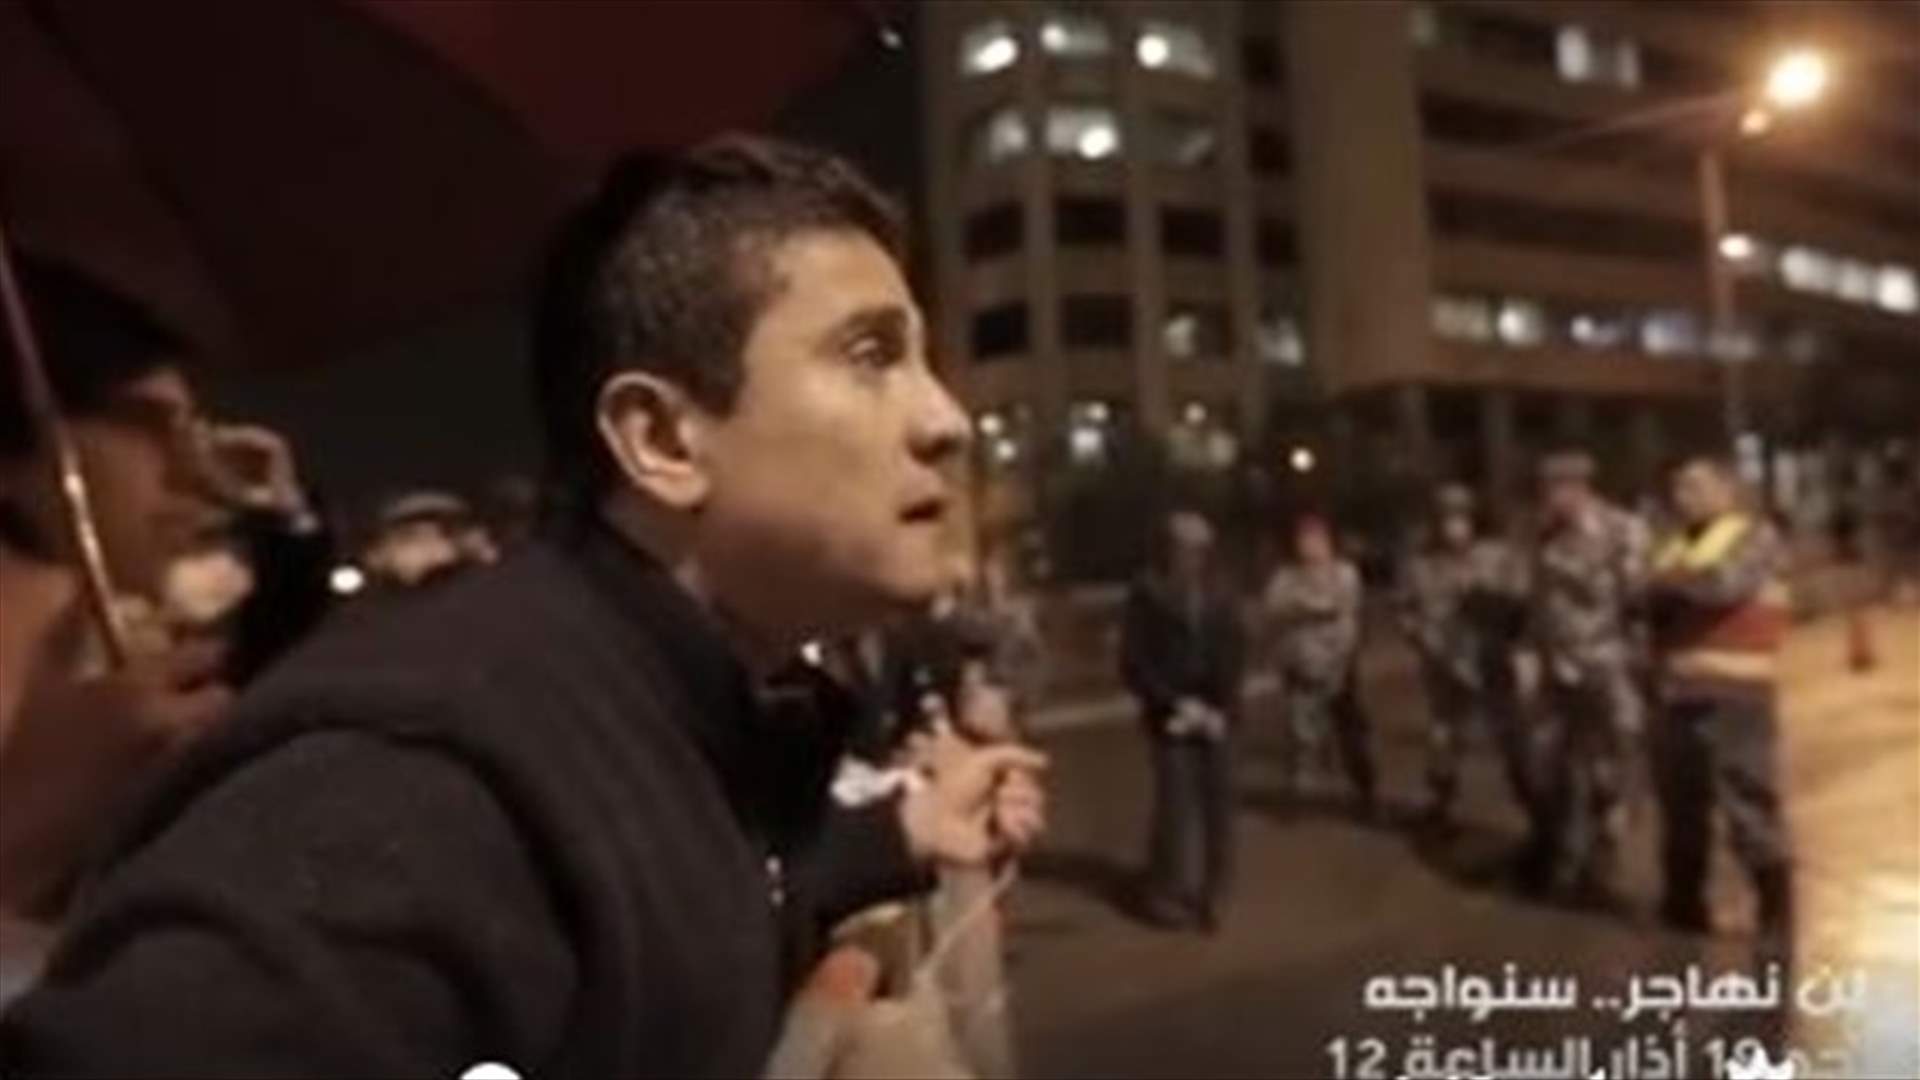 بالفيديو- شاب لبناني في رياض الصلح يصرخ بوجه العسكريين